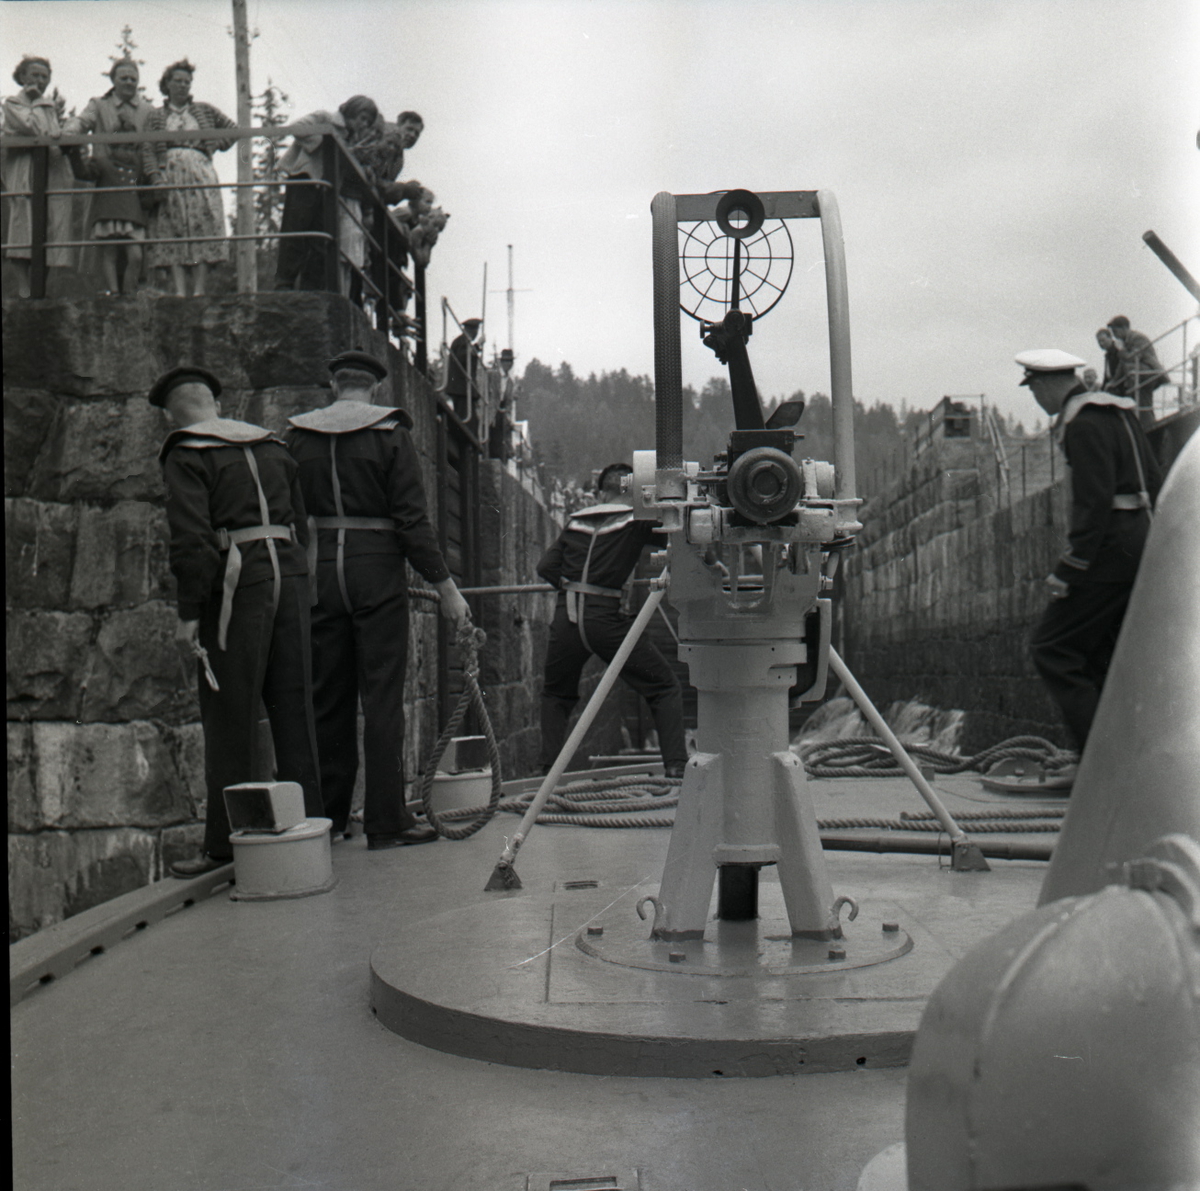 Samlefoto: Elco-klasse MTB-er gjennom Bandak-kanalen i juli 1953.
På vei inn i sluse.